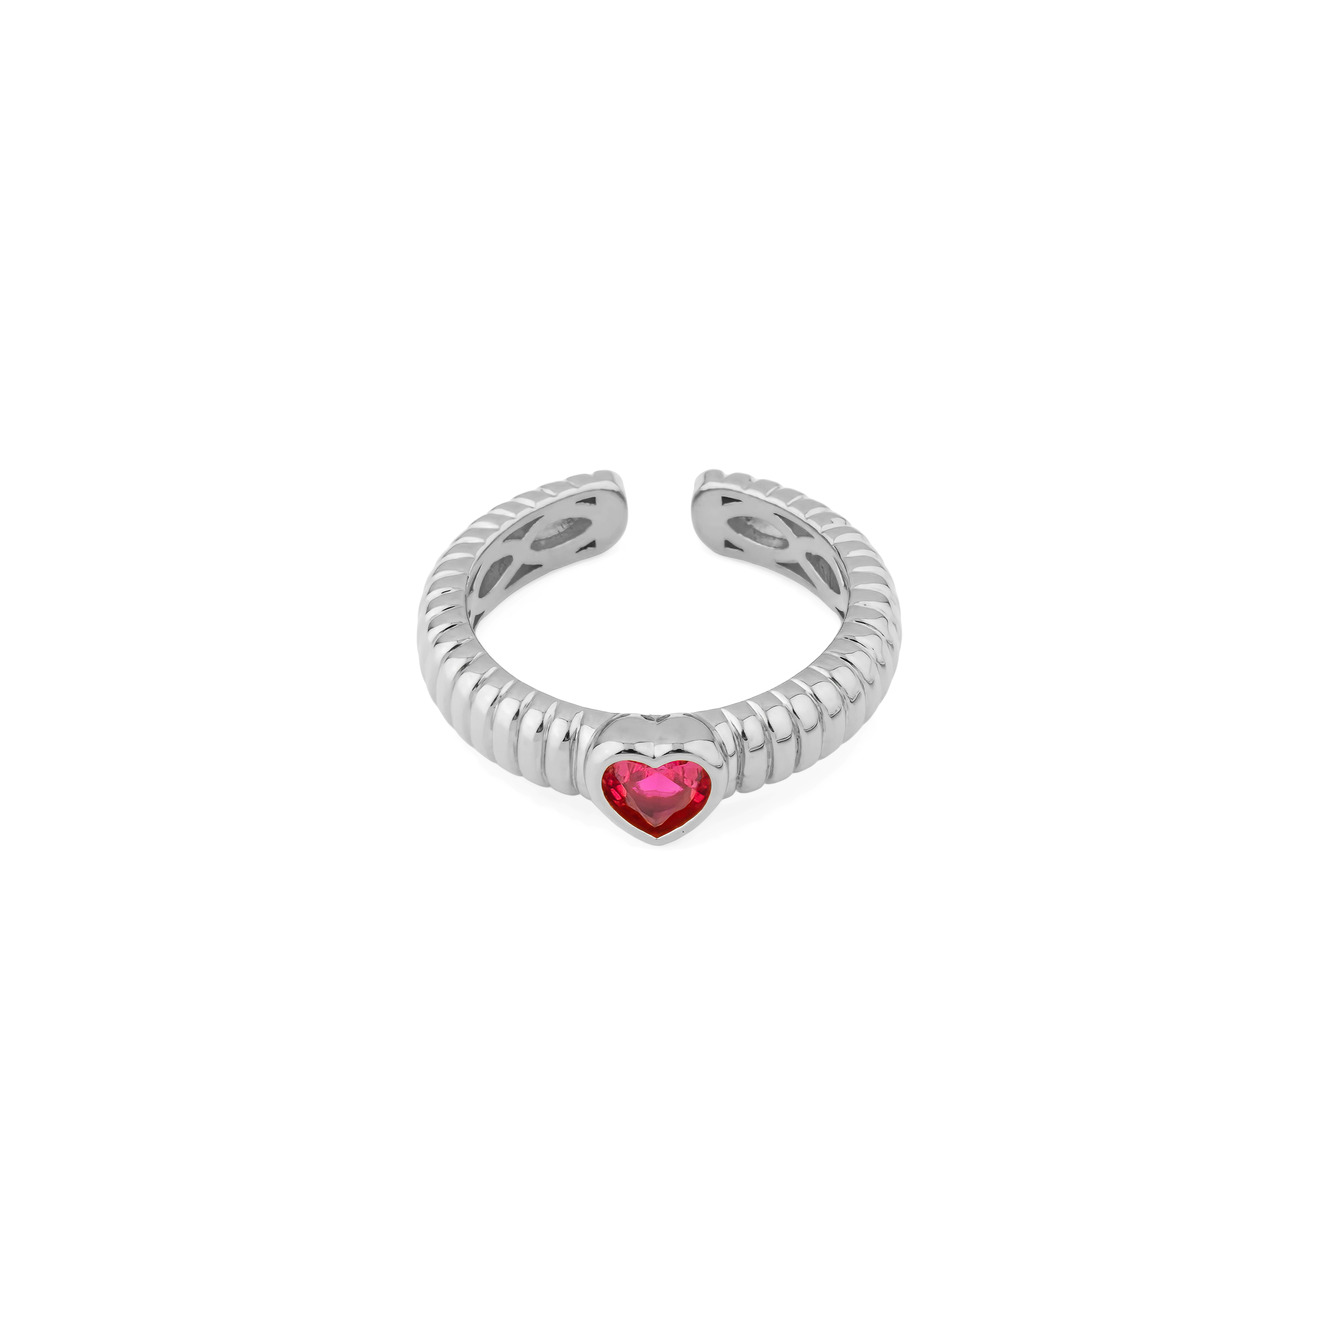 Herald Percy Серебристое фигурное кольцо с красным сердцем herald percy серебристое фигурное кольцо с красным сердцем